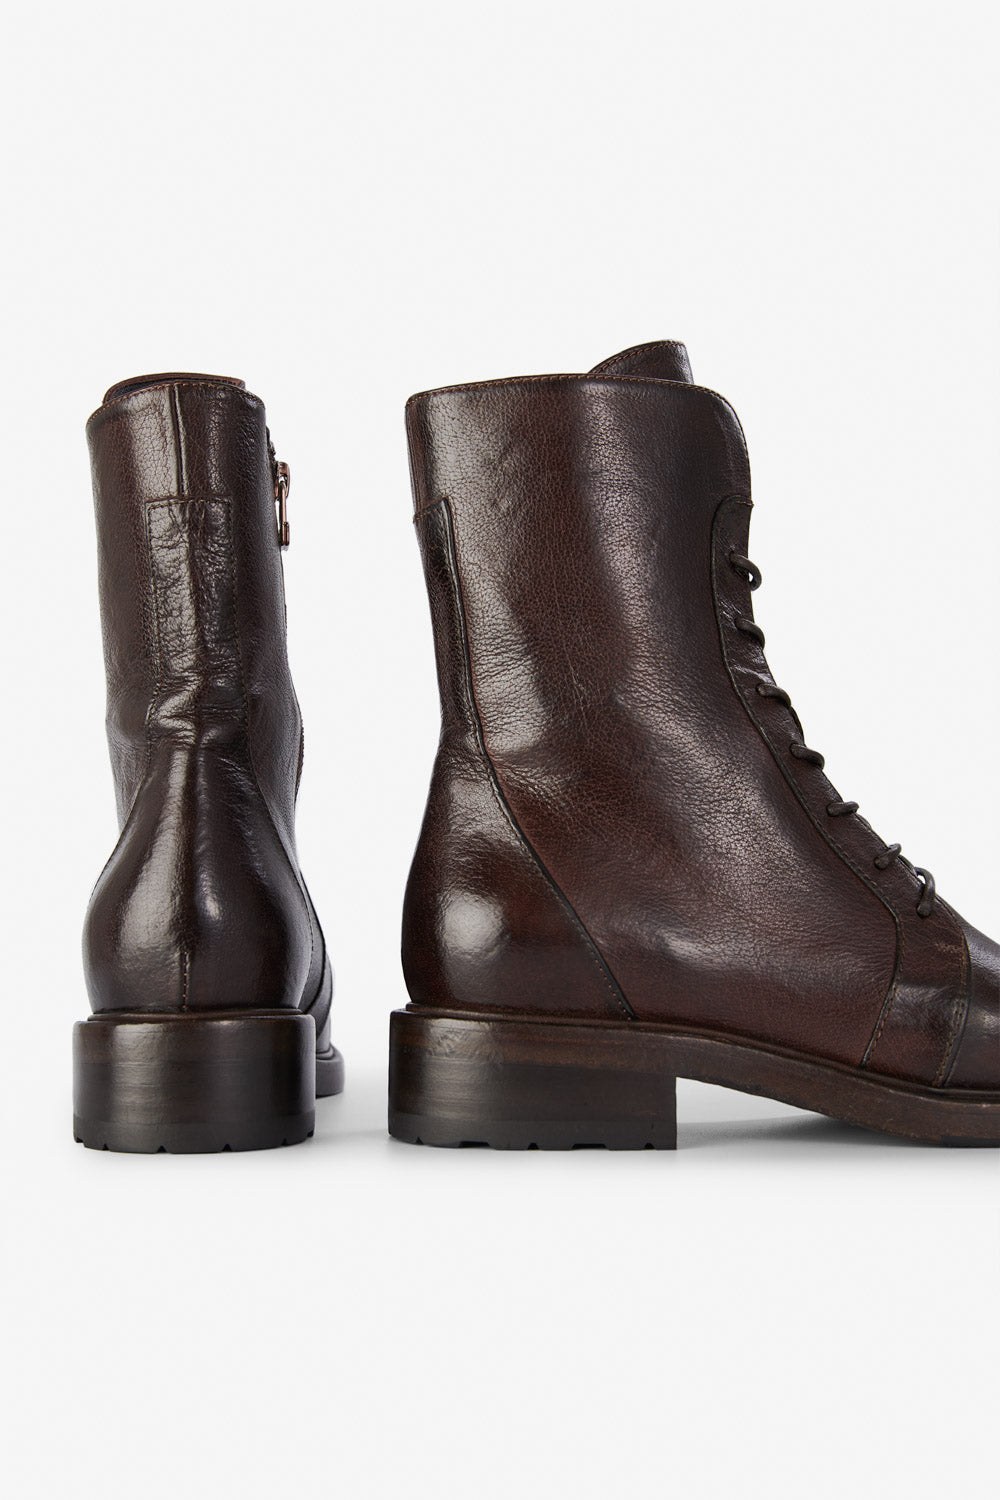 BERKELEY terra-brown ankle boots, untamed street